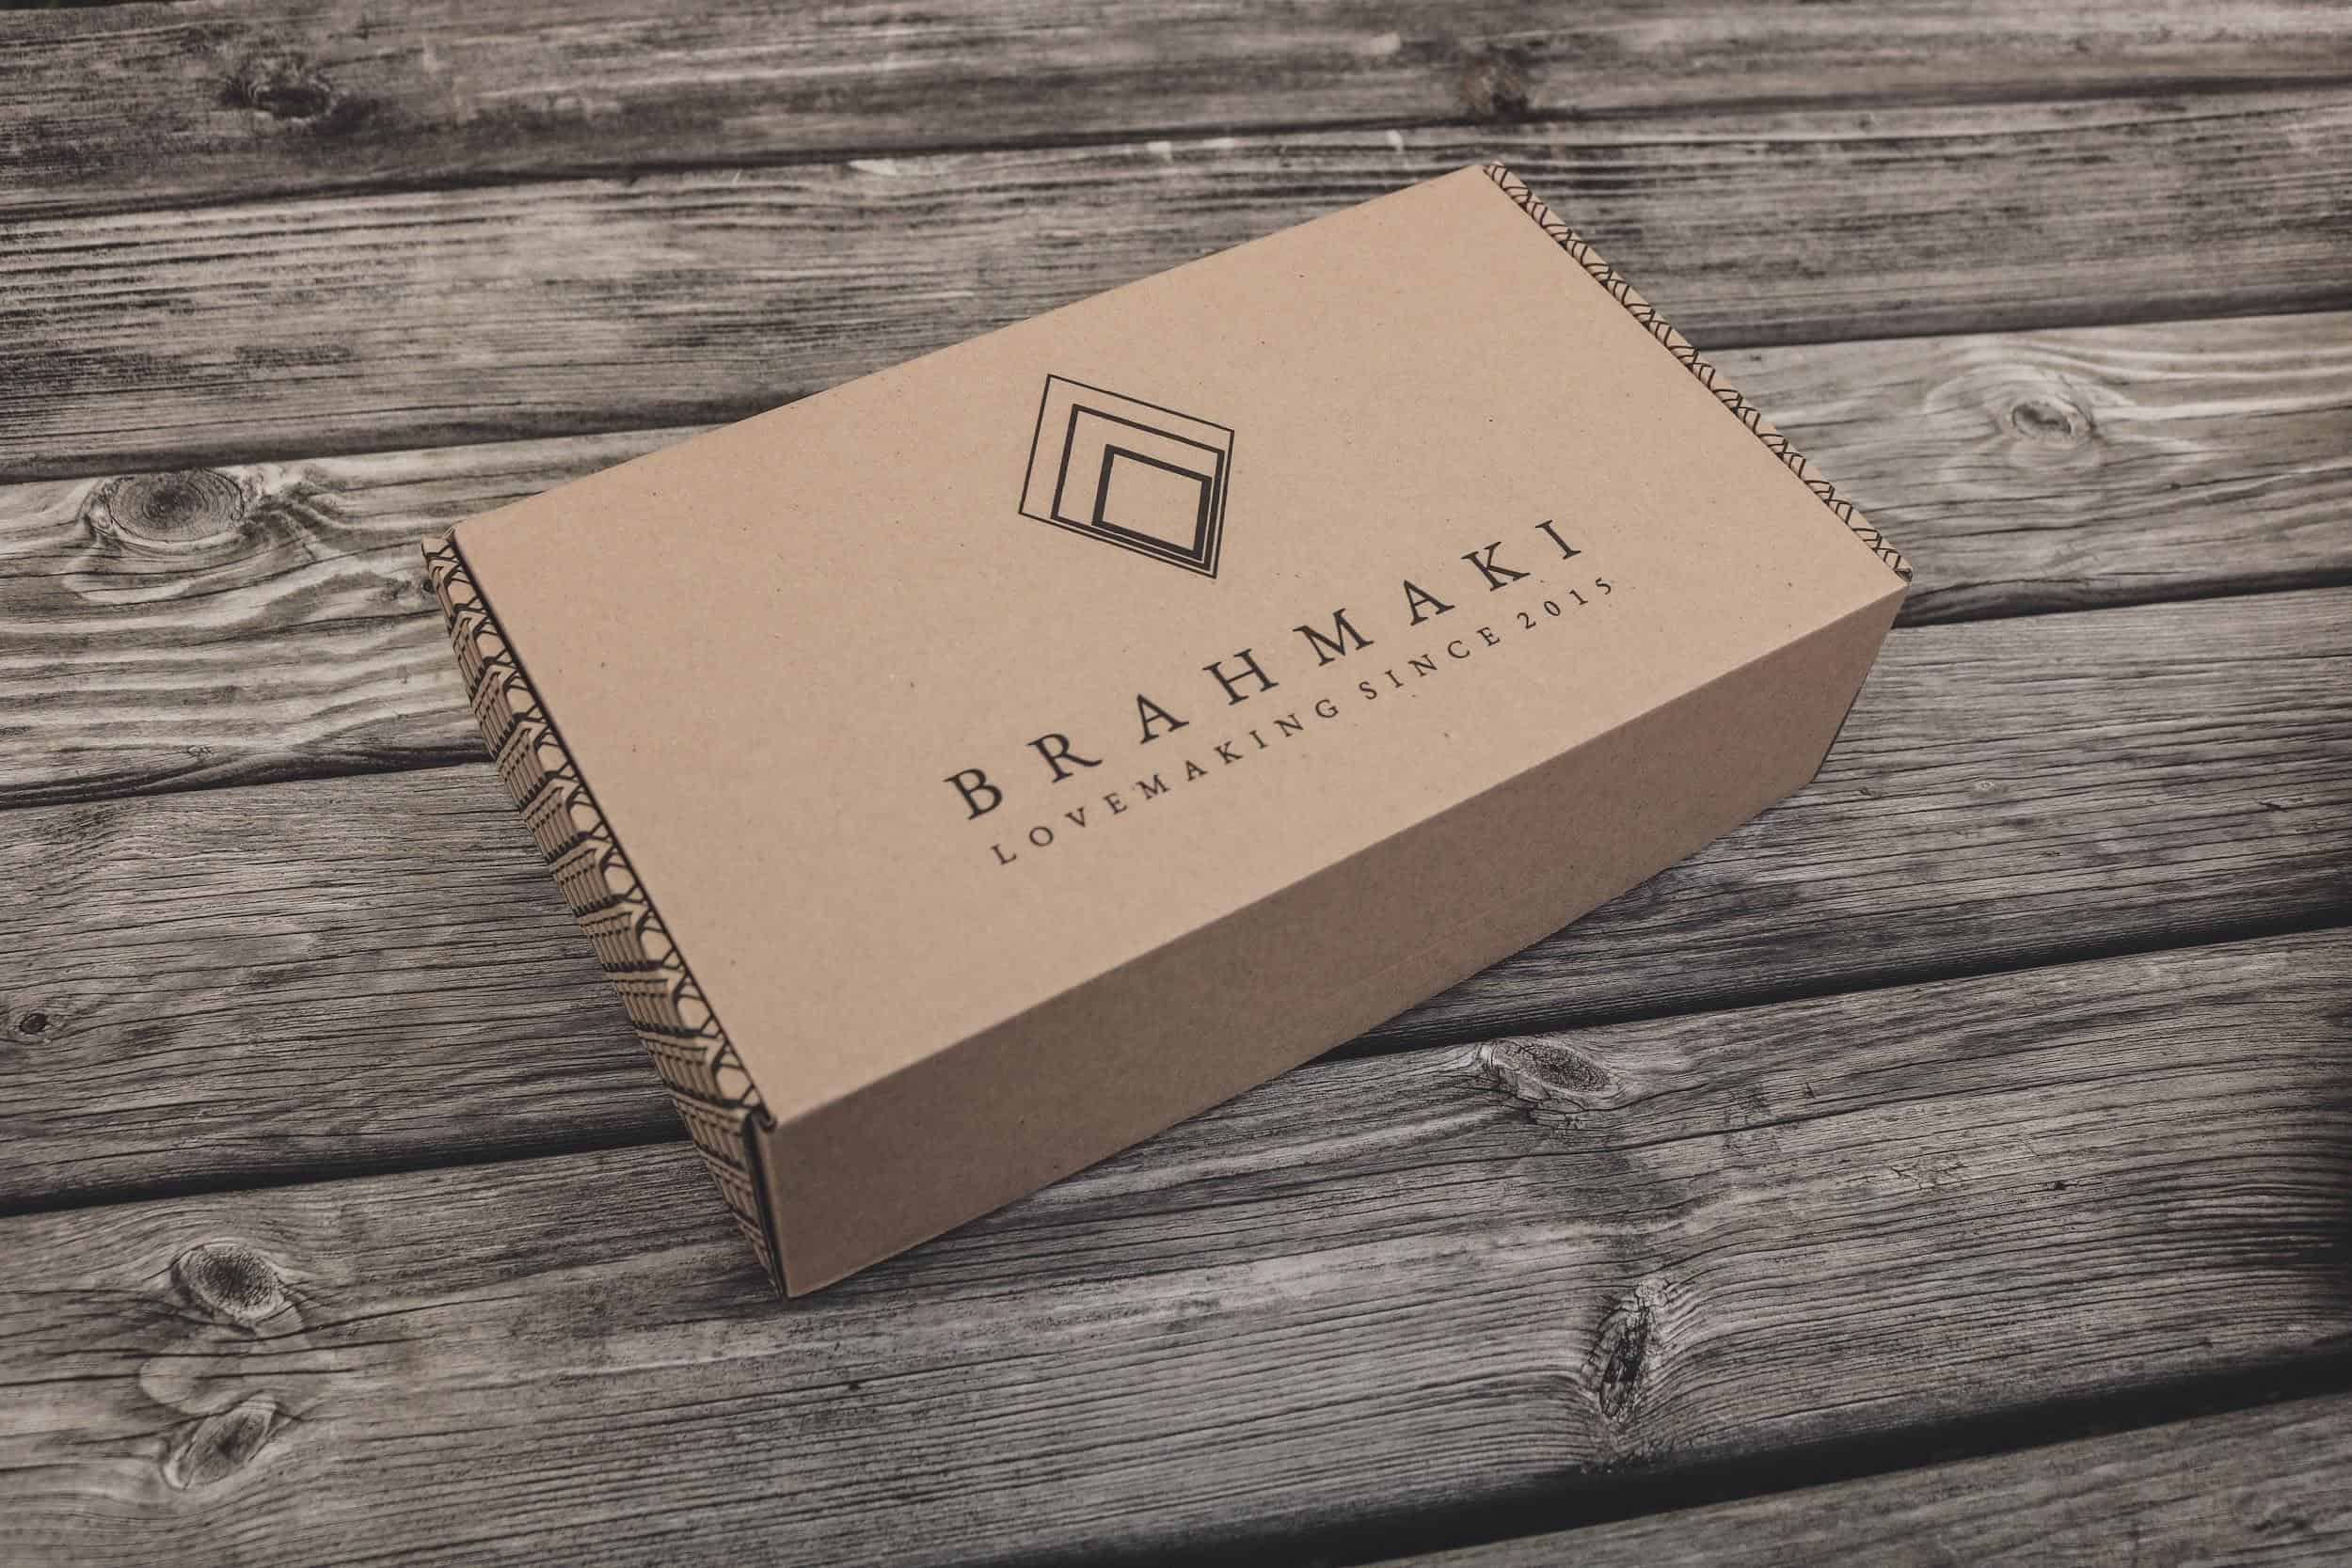 Branded packaging box